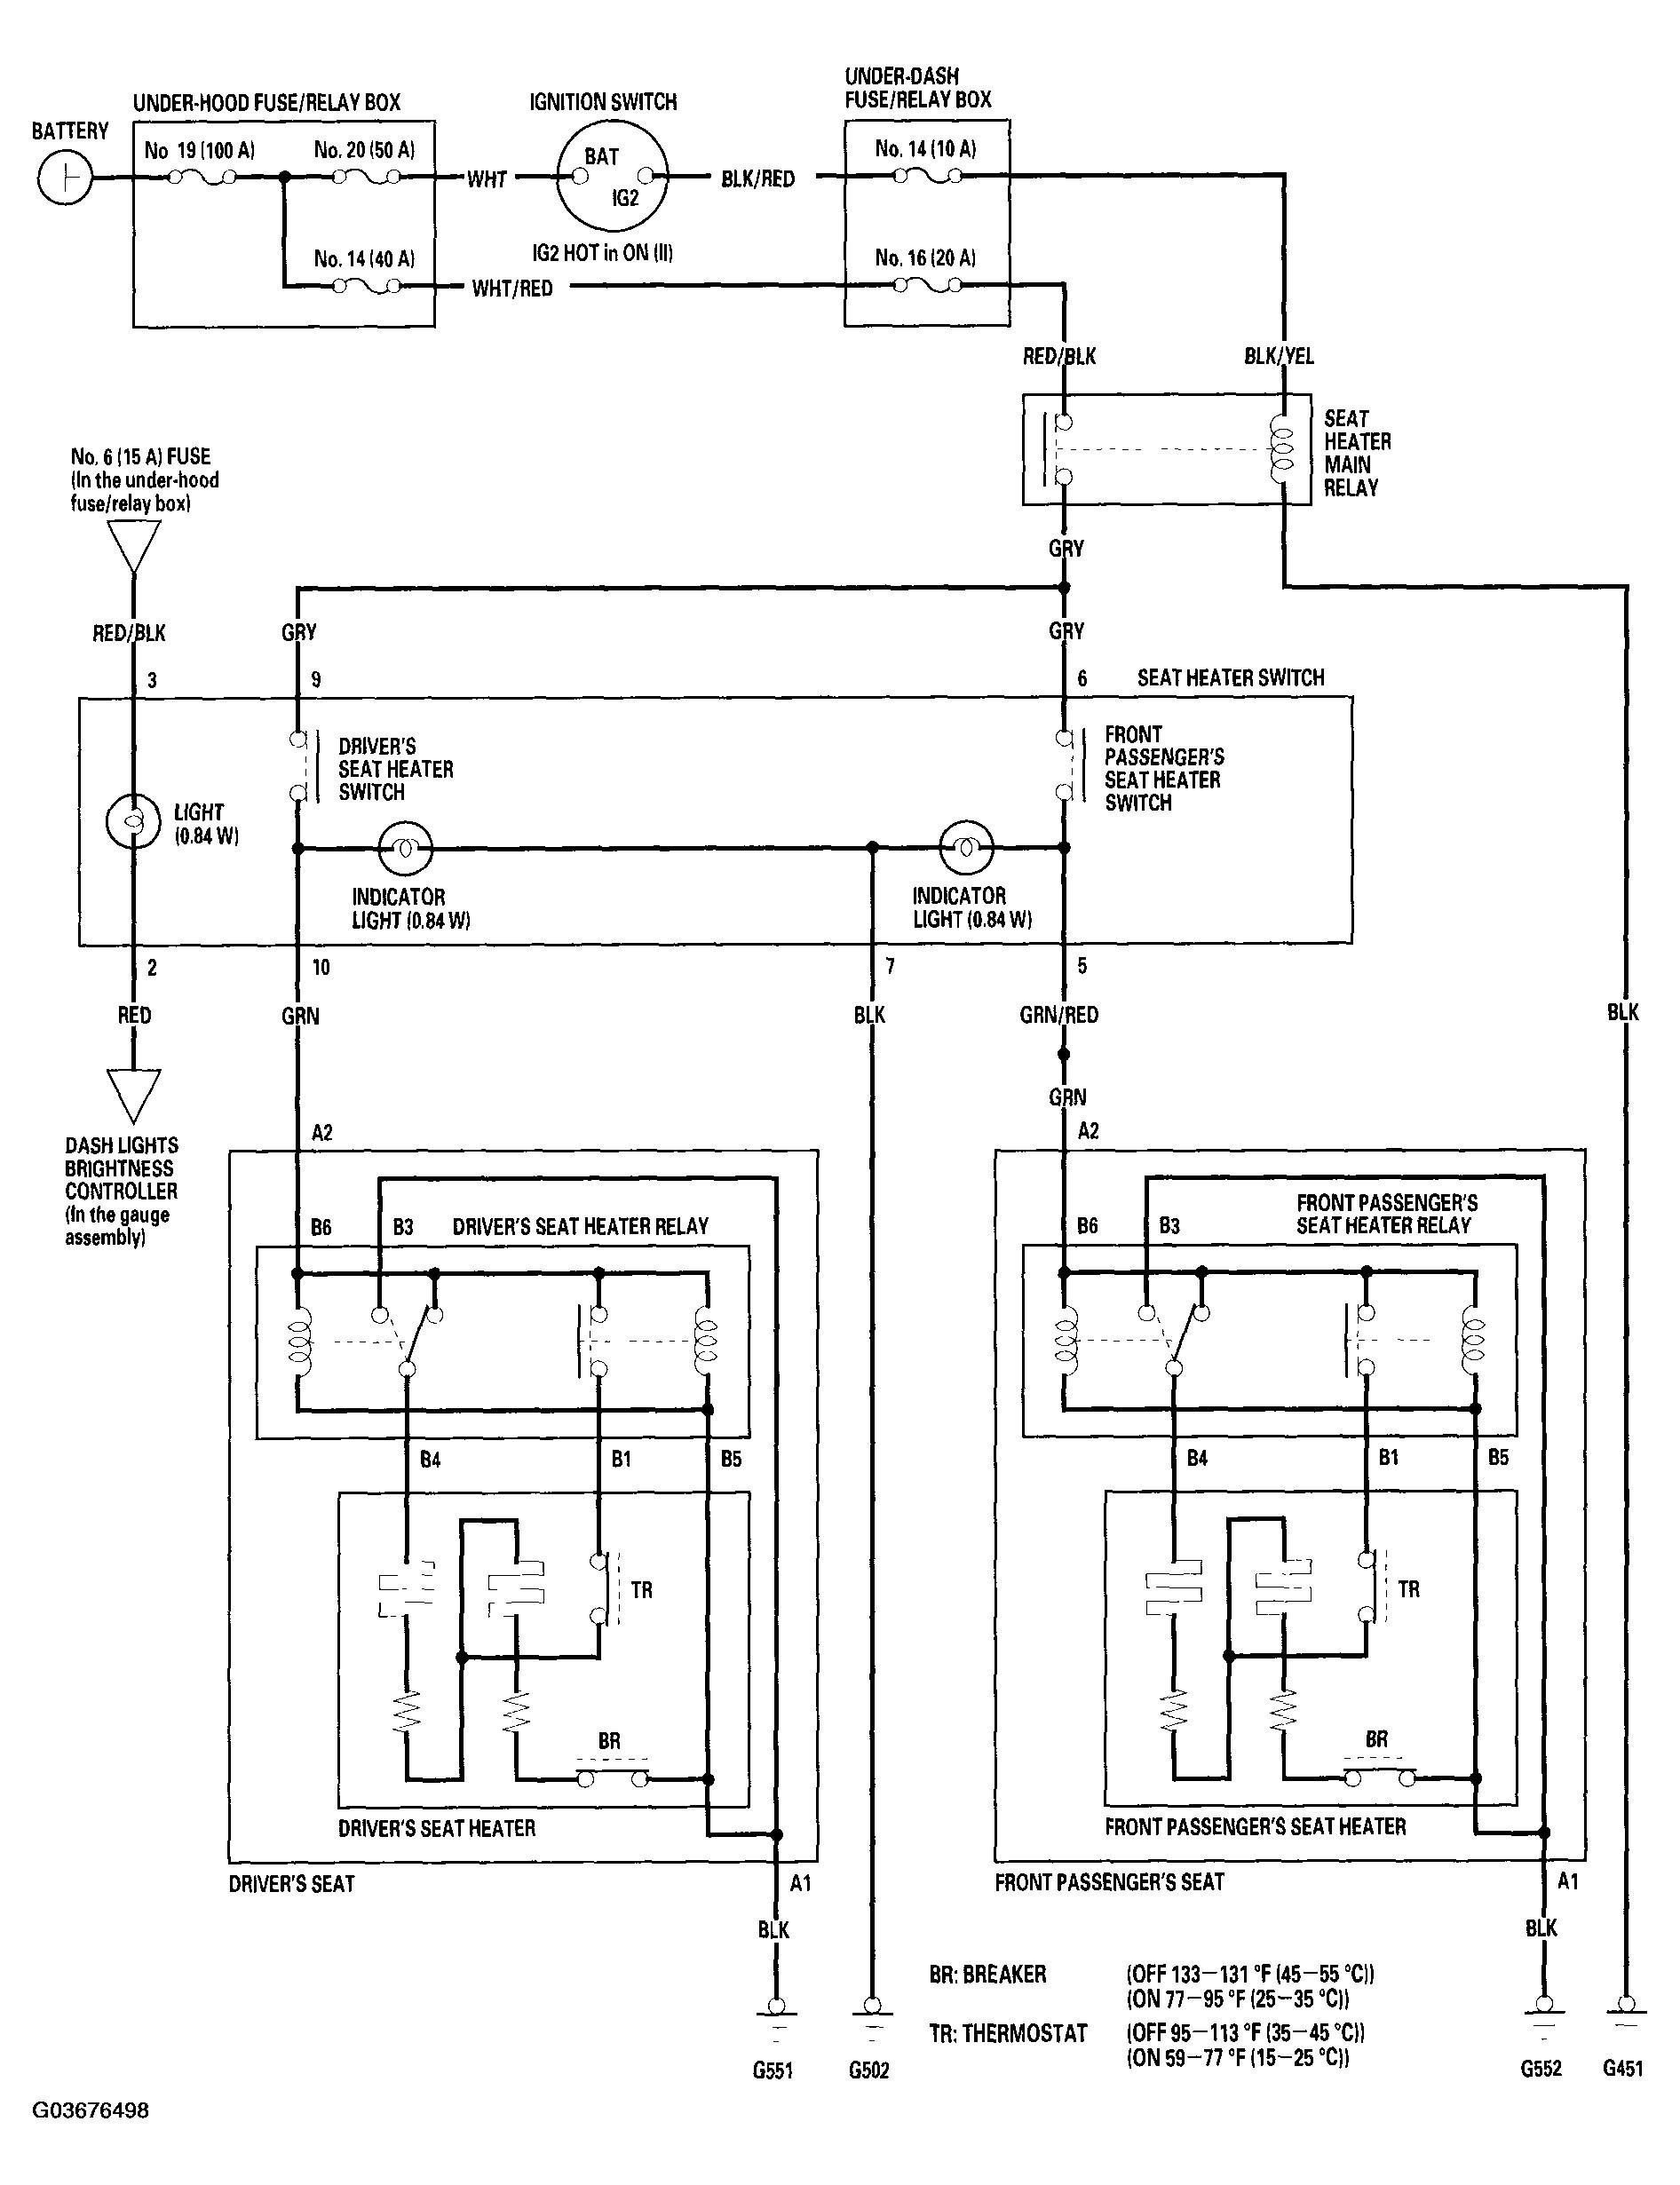 1994 Honda Civic Engine Diagram 2000 Civic Engine Diagram 1994 Honda Accord Engine Diagram Cr V Fuse Of 1994 Honda Civic Engine Diagram